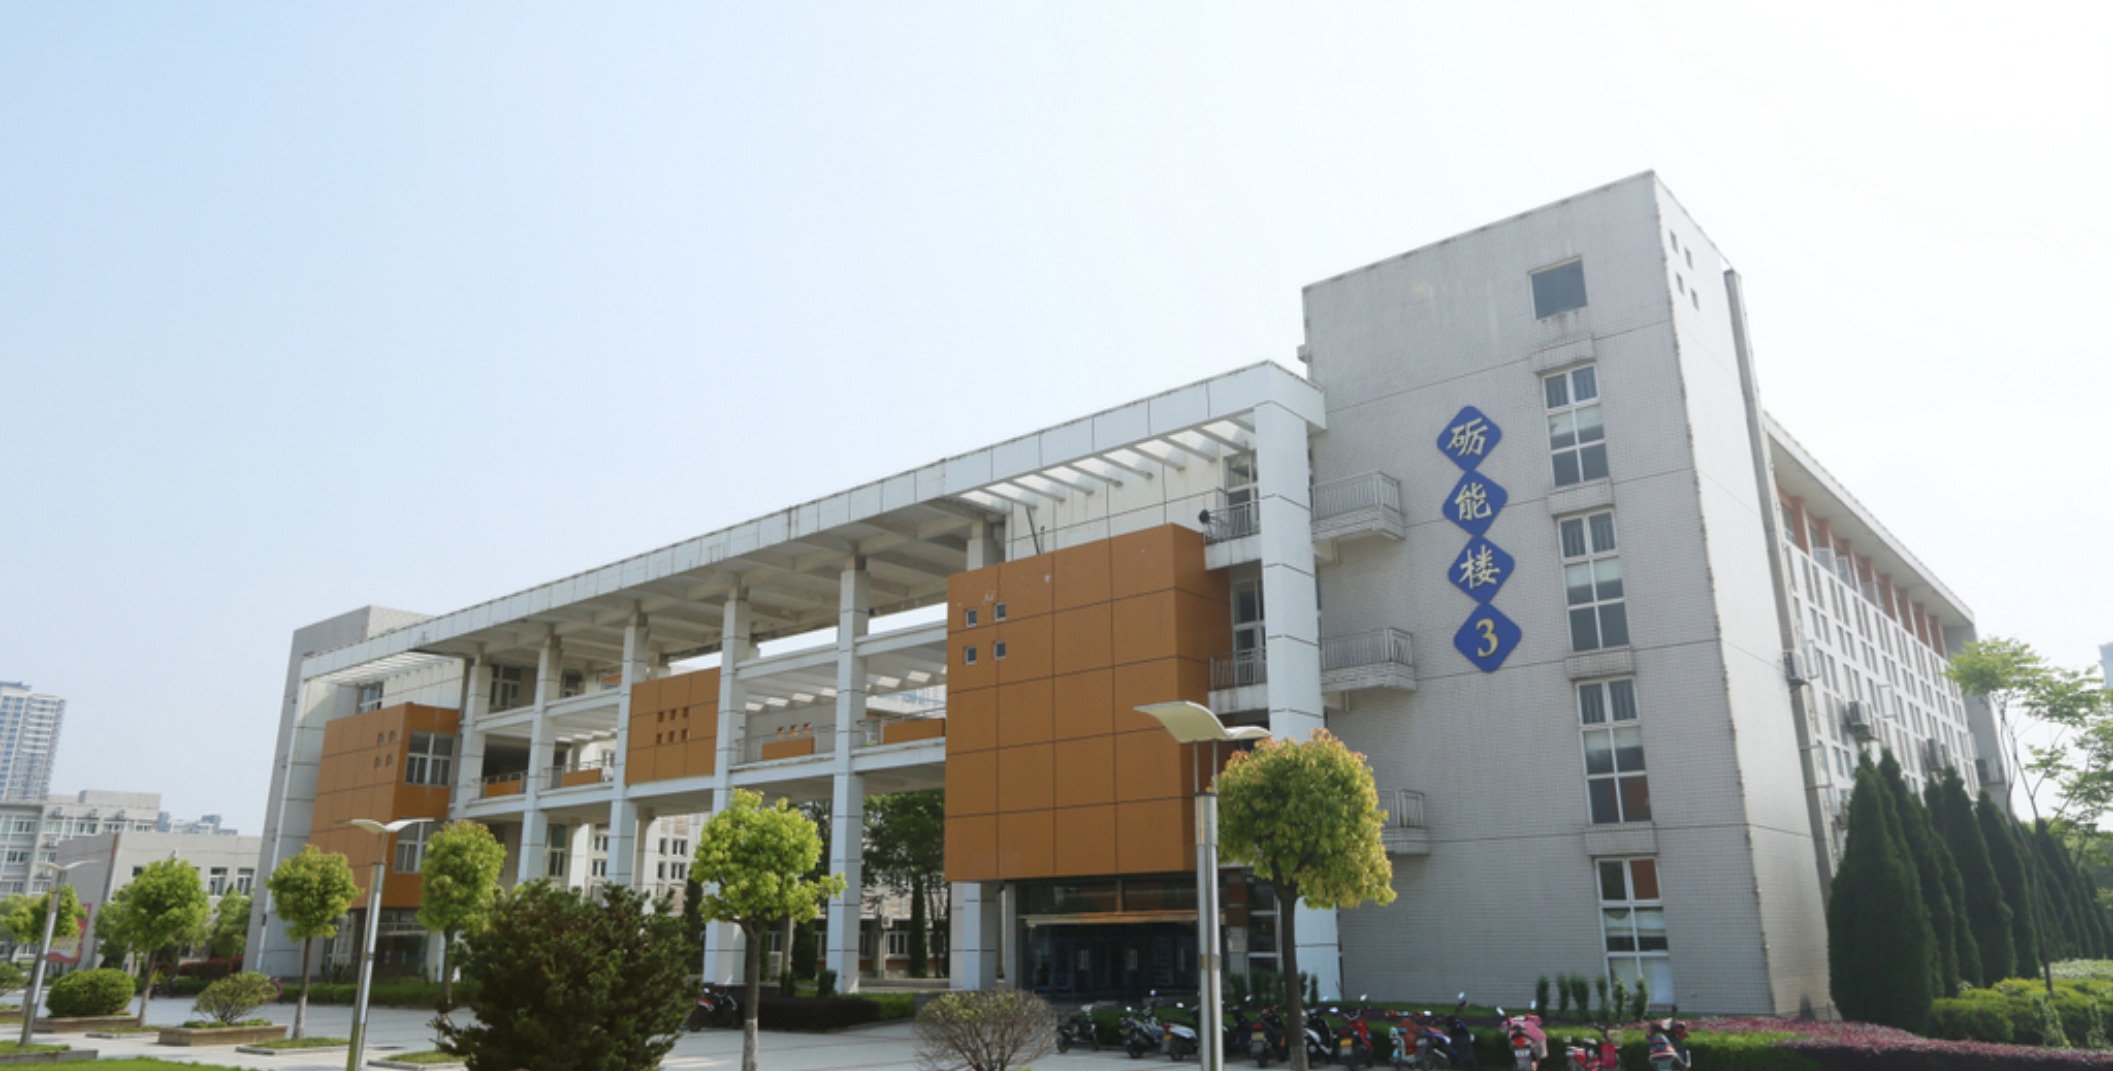 2006年学院被省人民政府命名为“安徽省文明单位”